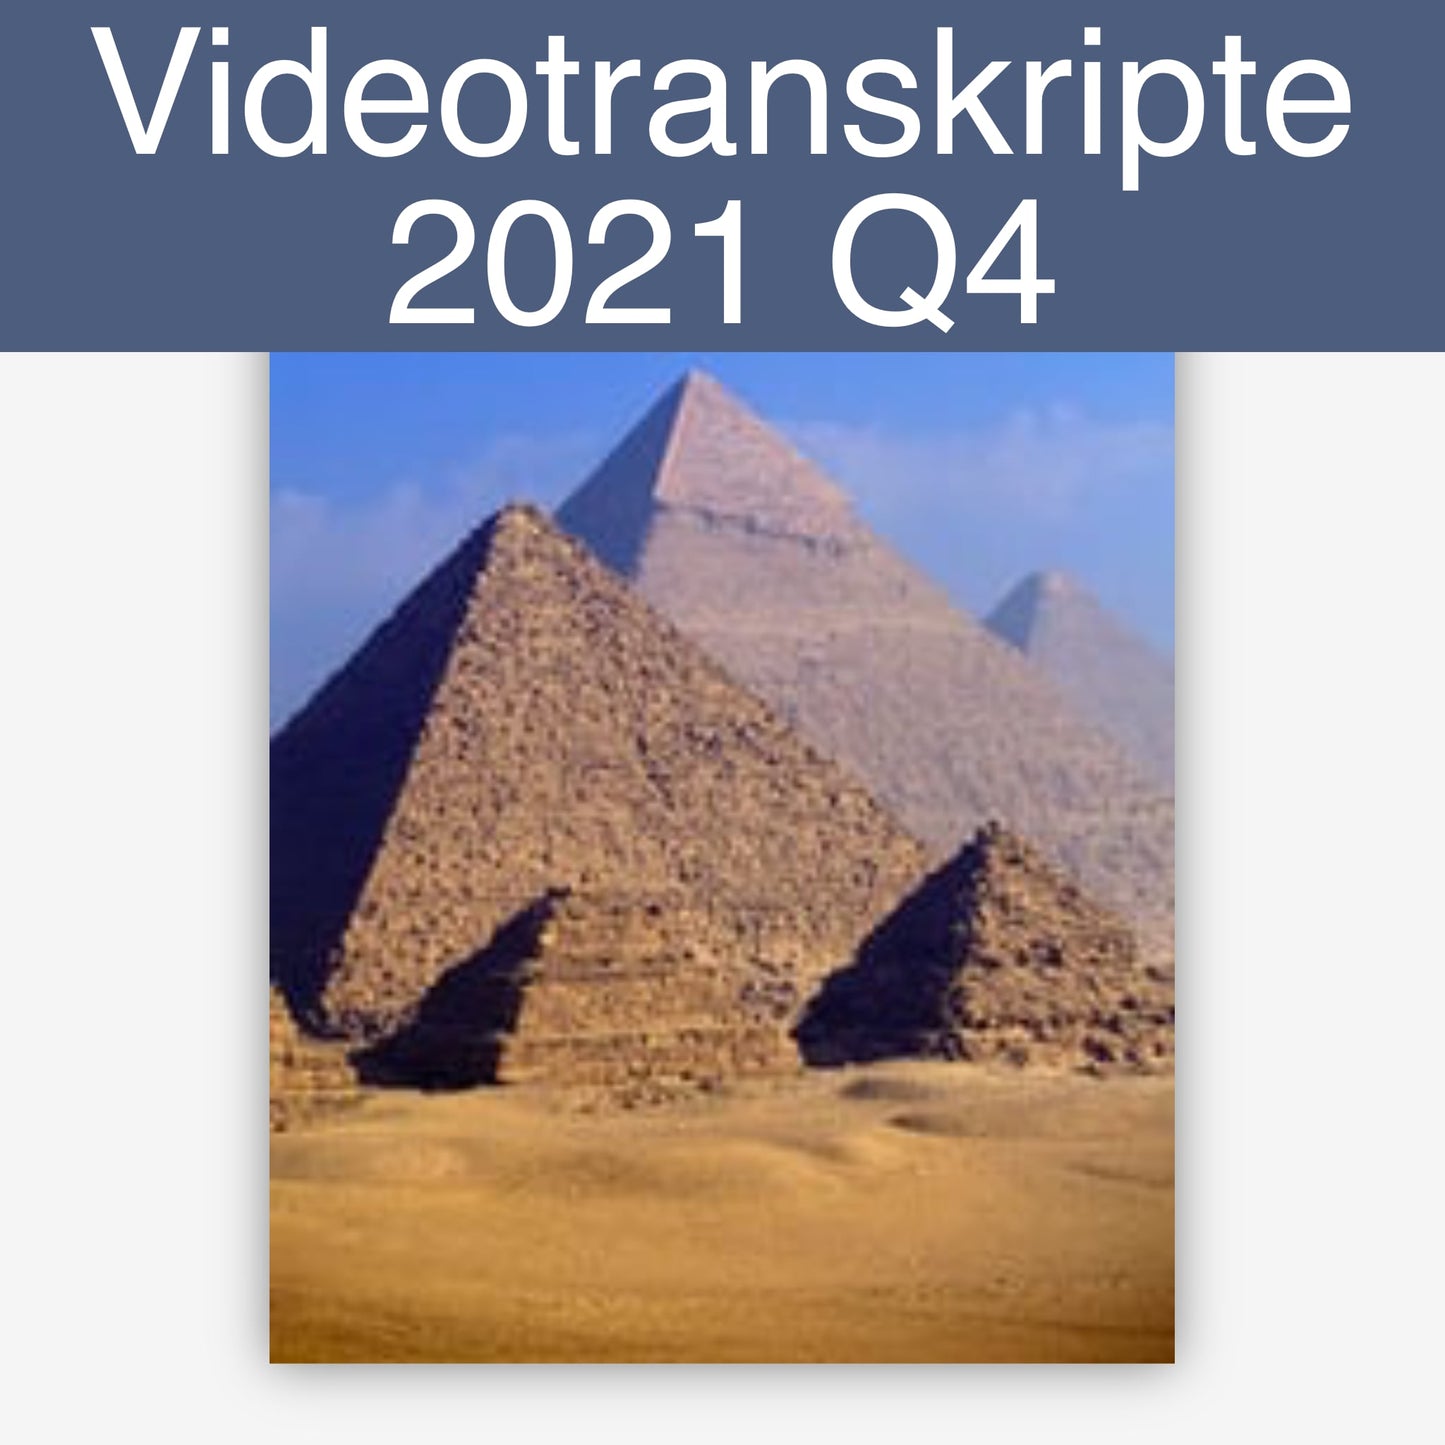 Videotranskripte 2021 Q4